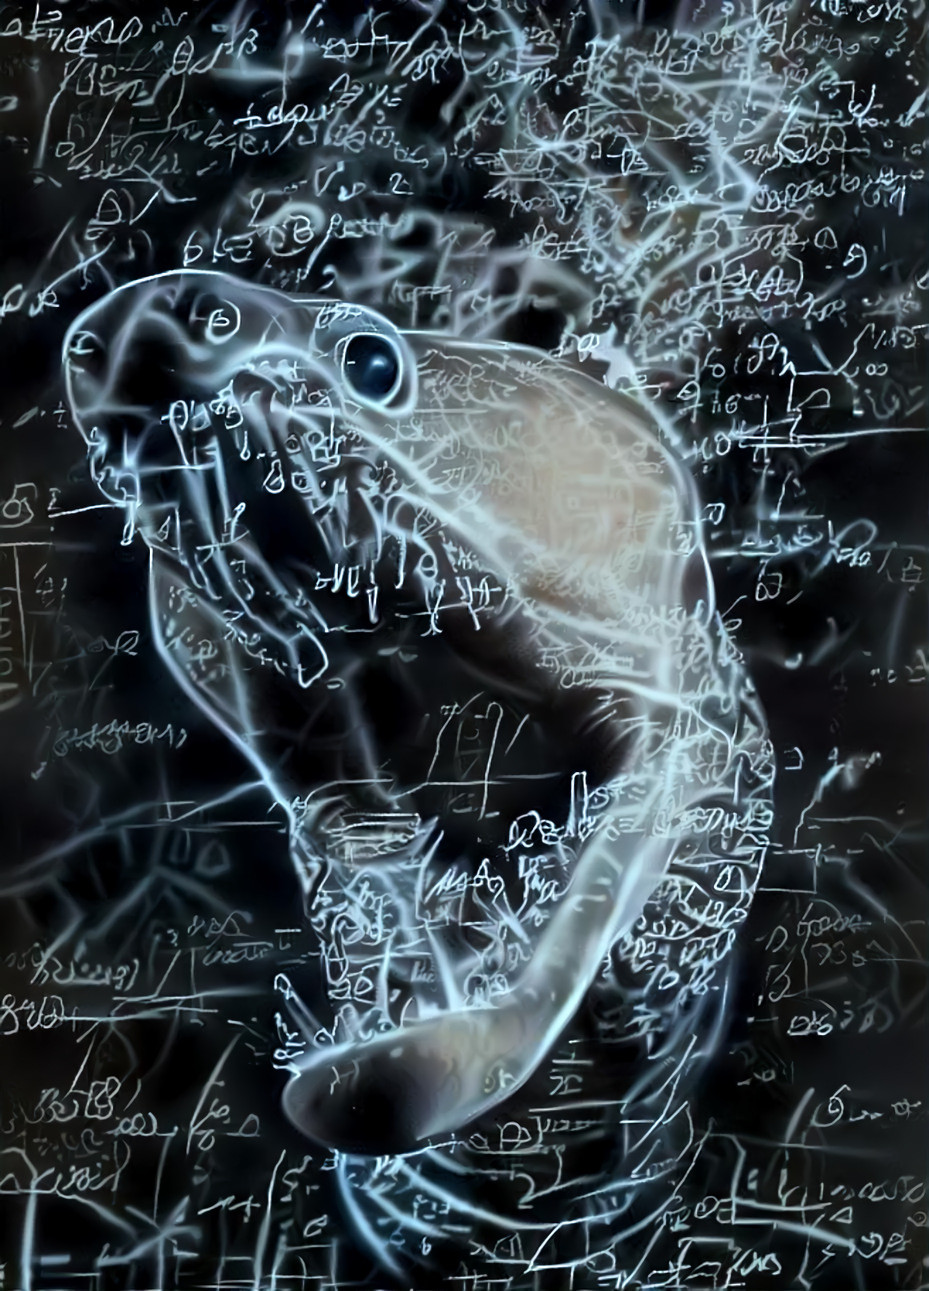 fangtooth dragon moray eel, neon chalkboard